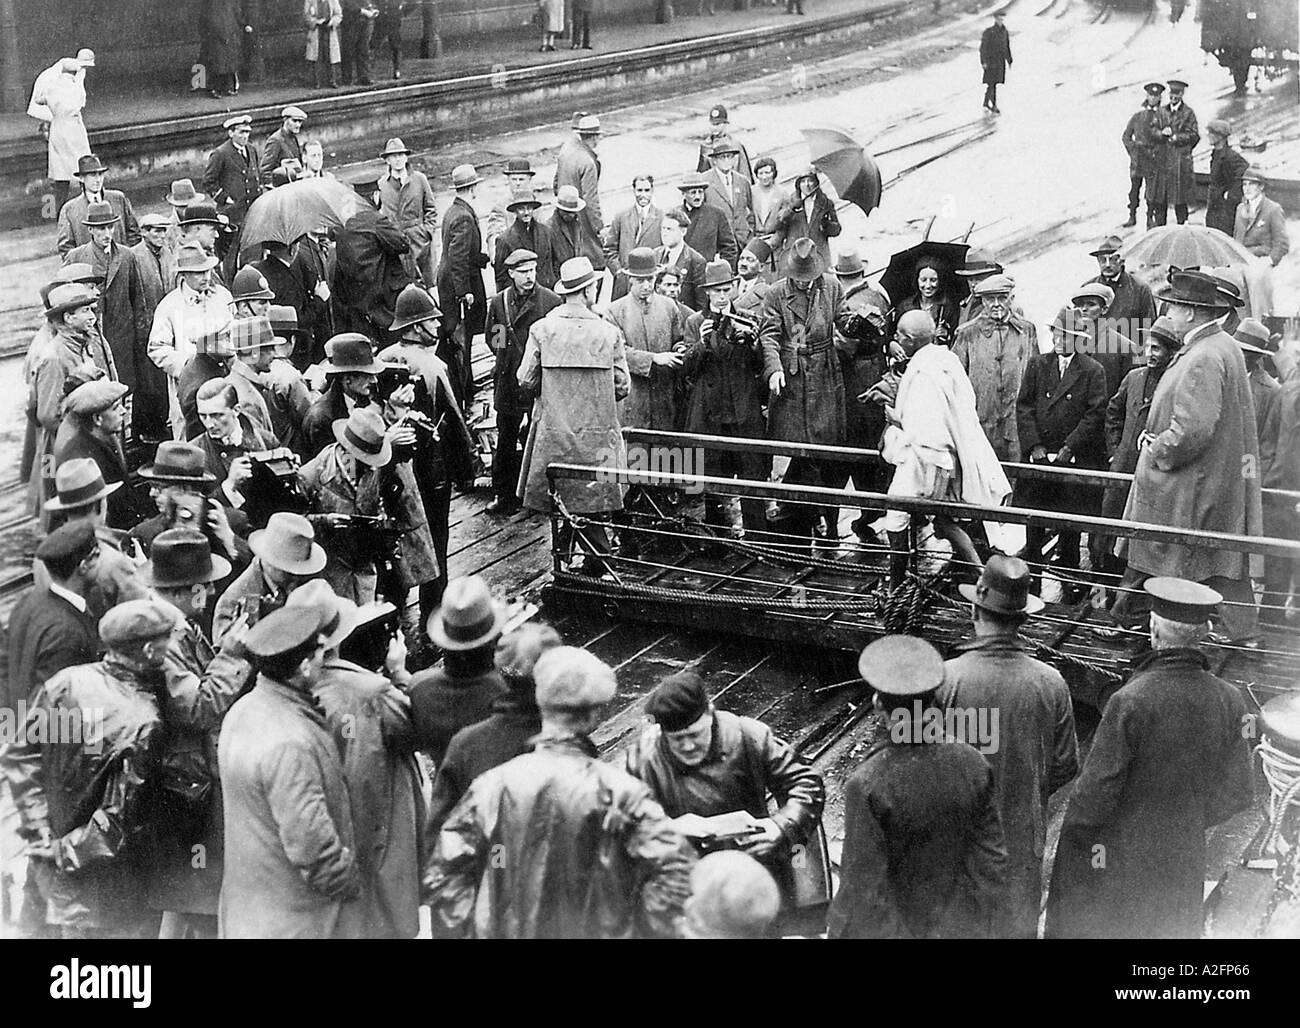 Mahatma Gandhi descend du navire à Folkstone Angleterre Royaume-Uni le 12 septembre 1931 - MKG 33337 Banque D'Images